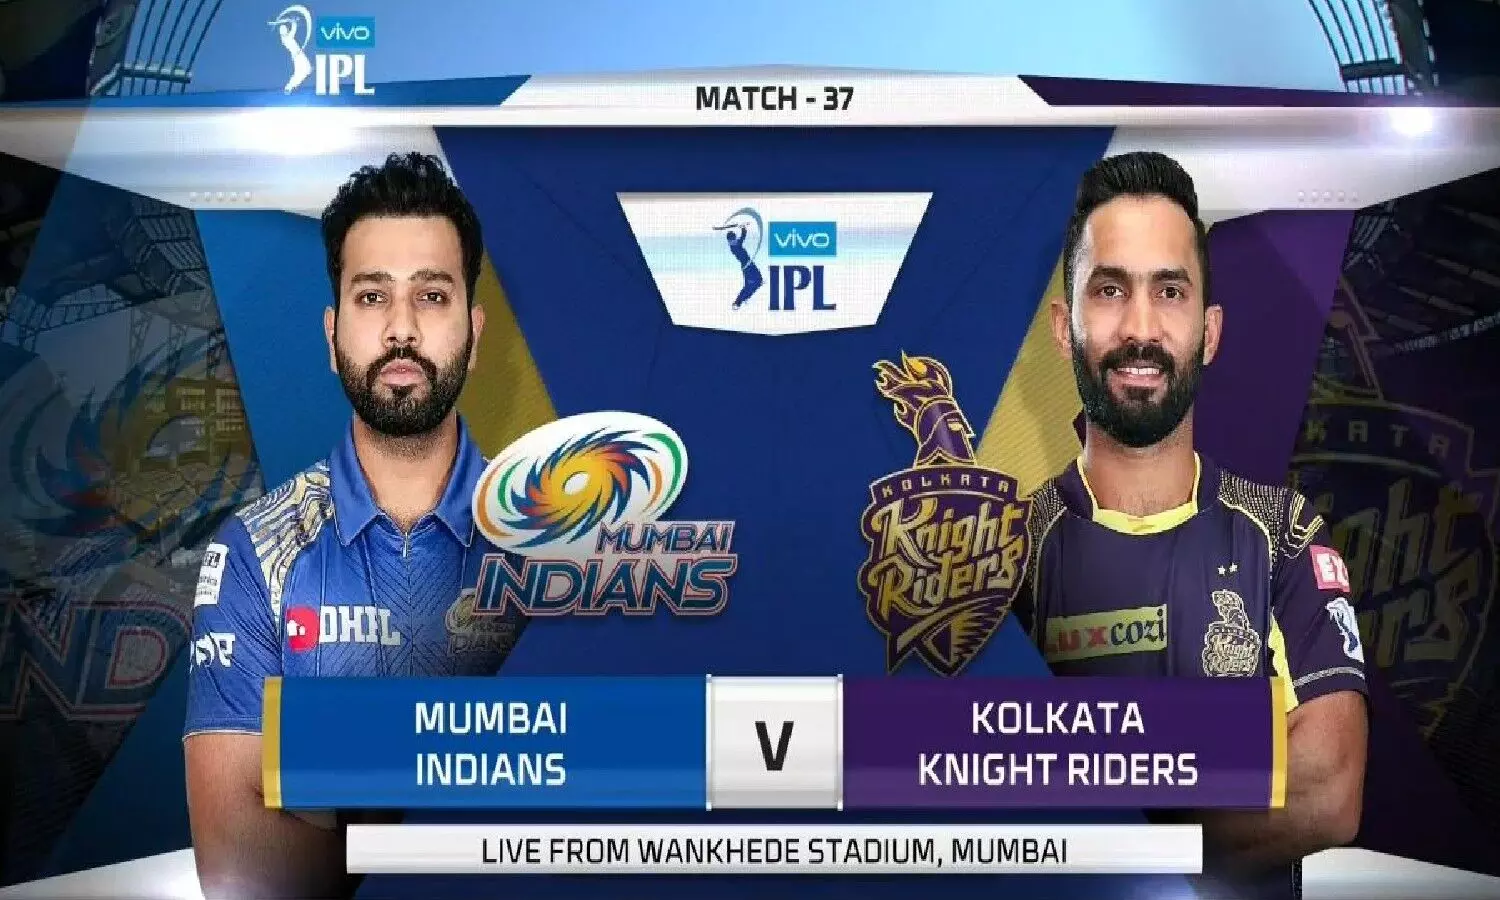 MI vs KKR- मुंबई इंडियंस 10 रनों से जीती, कोलकाता को आखिरी ओवर पड़ा भारी